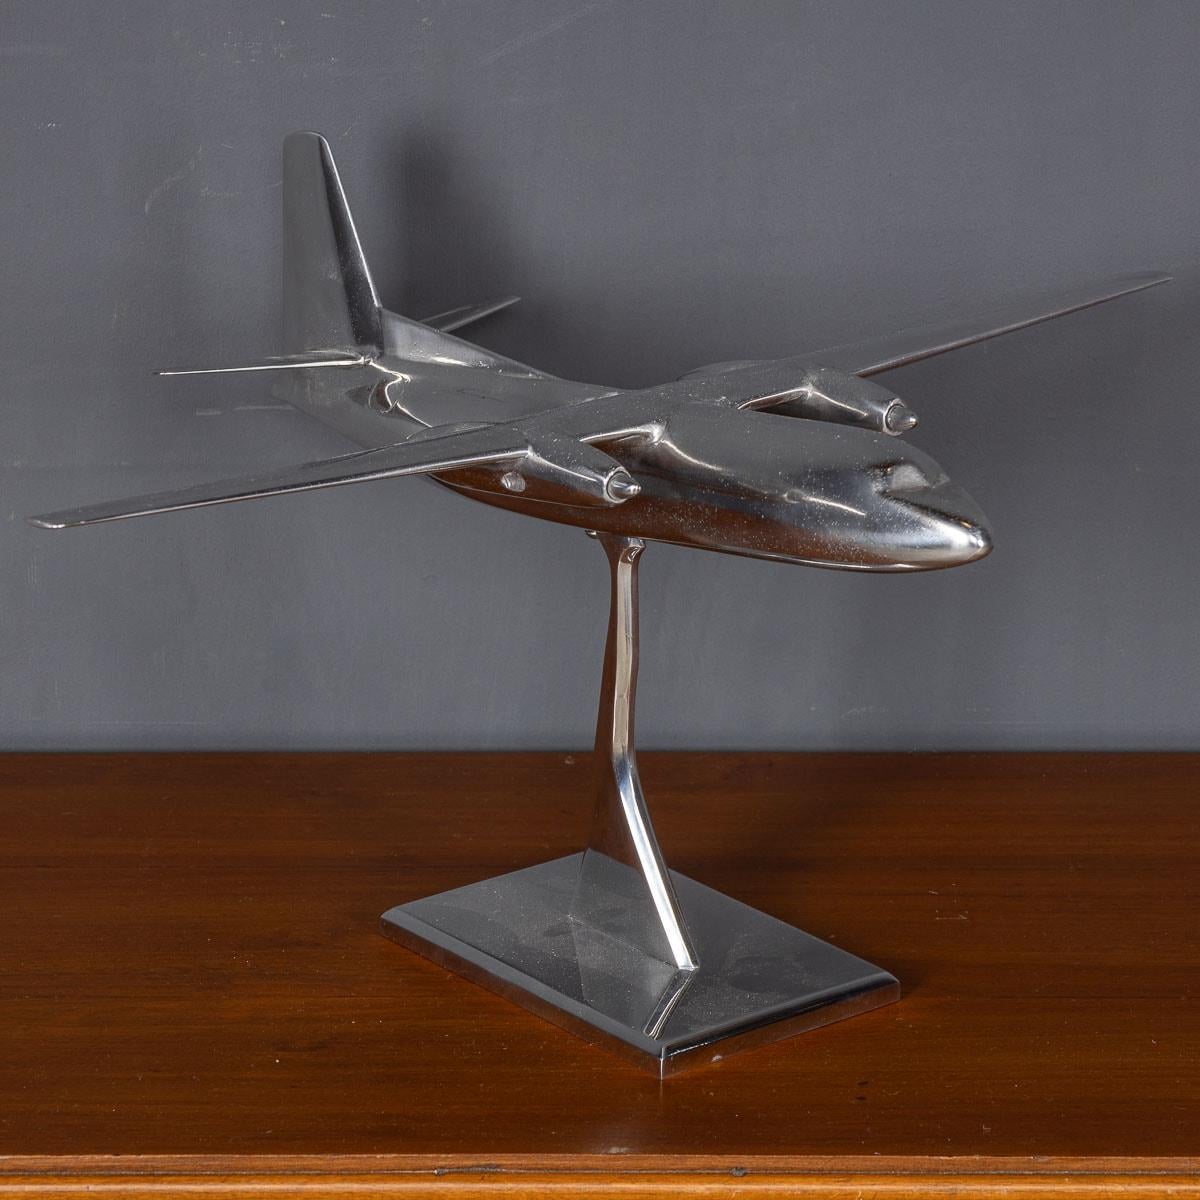 Un modèle exquis d'un petit avion de ligne du 20e siècle, fabriqué de manière experte en aluminium et présenté sur un socle en aluminium assorti. Cette pièce remarquable sert de point focal captivant, parfait pour susciter des conversations